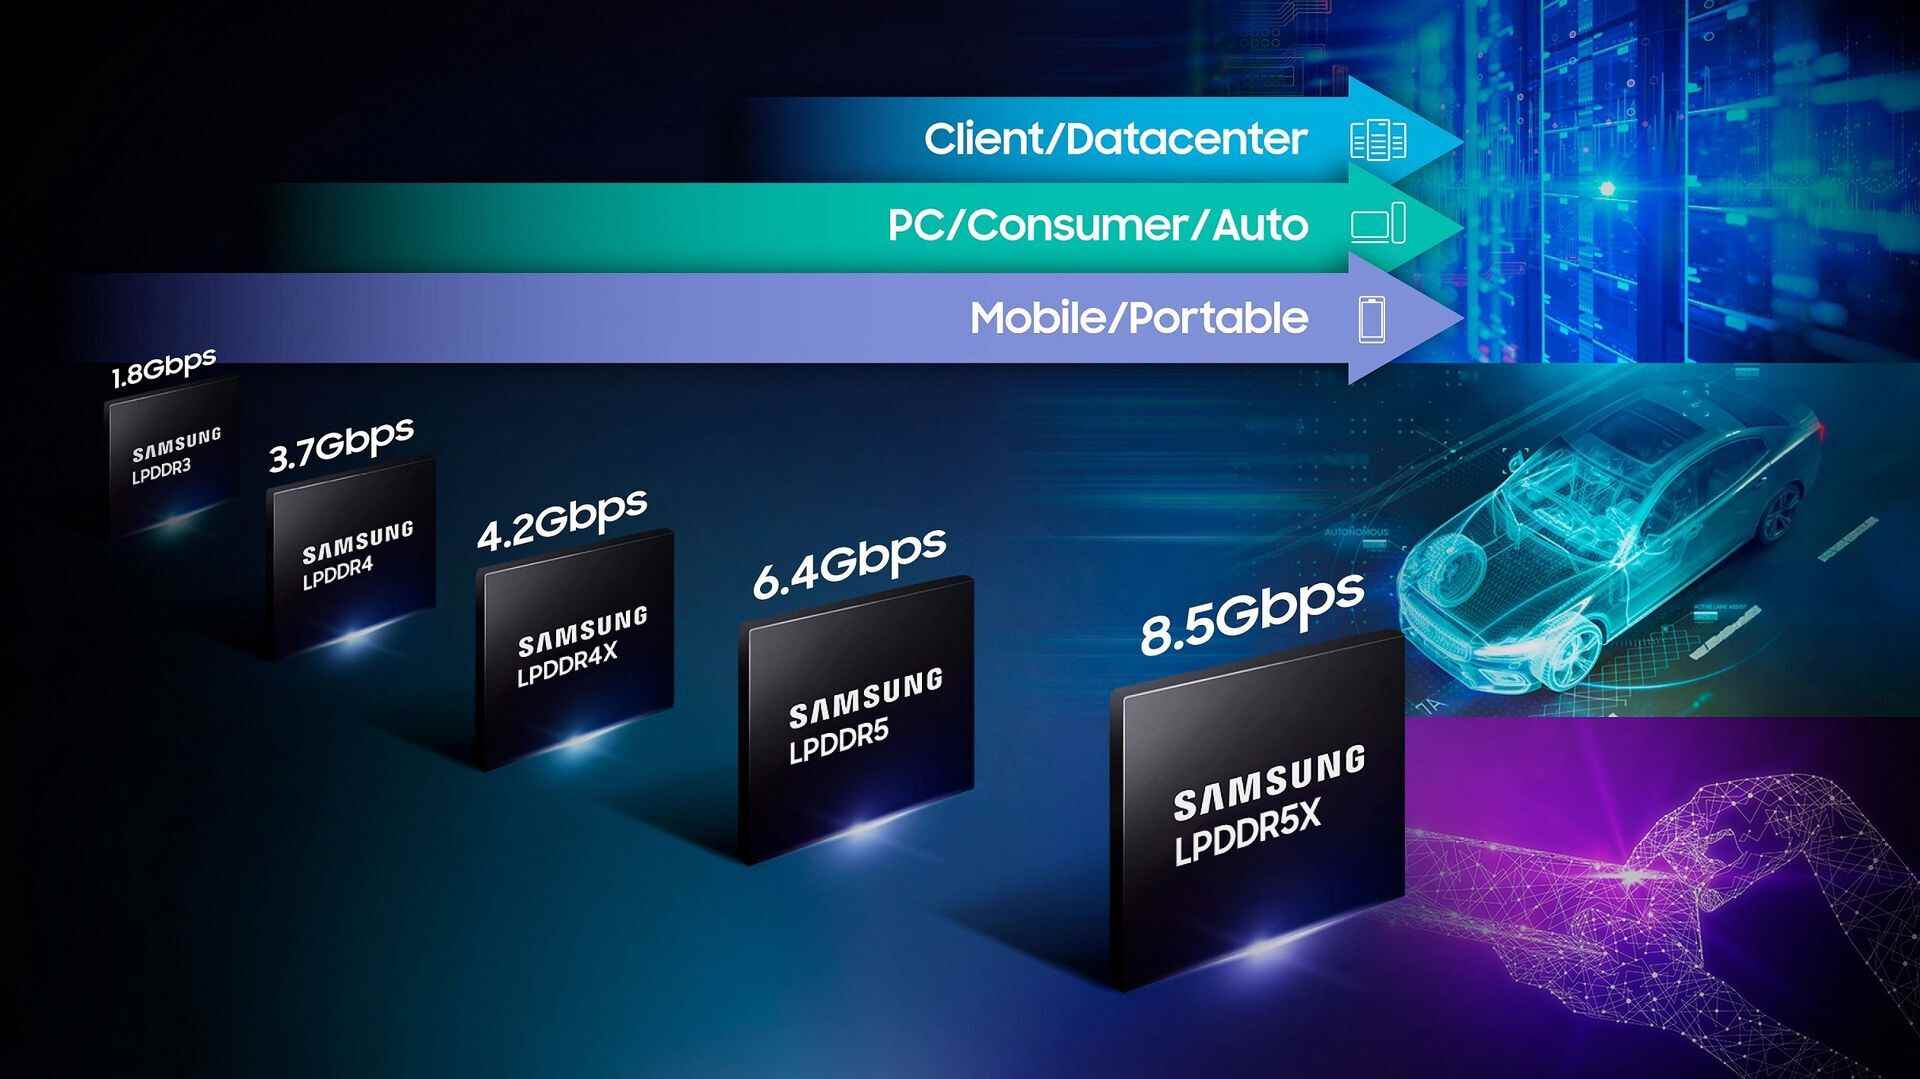 Der neue Chip ist 1,3-mal schneller als die vorherige Generation und hat eine um 20 % bessere Energieeffizienz – Samsung schlägt seinen eigenen Rekord mit schnellerem DRAM, das vermutlich für das Galaxy S23 bestimmt ist